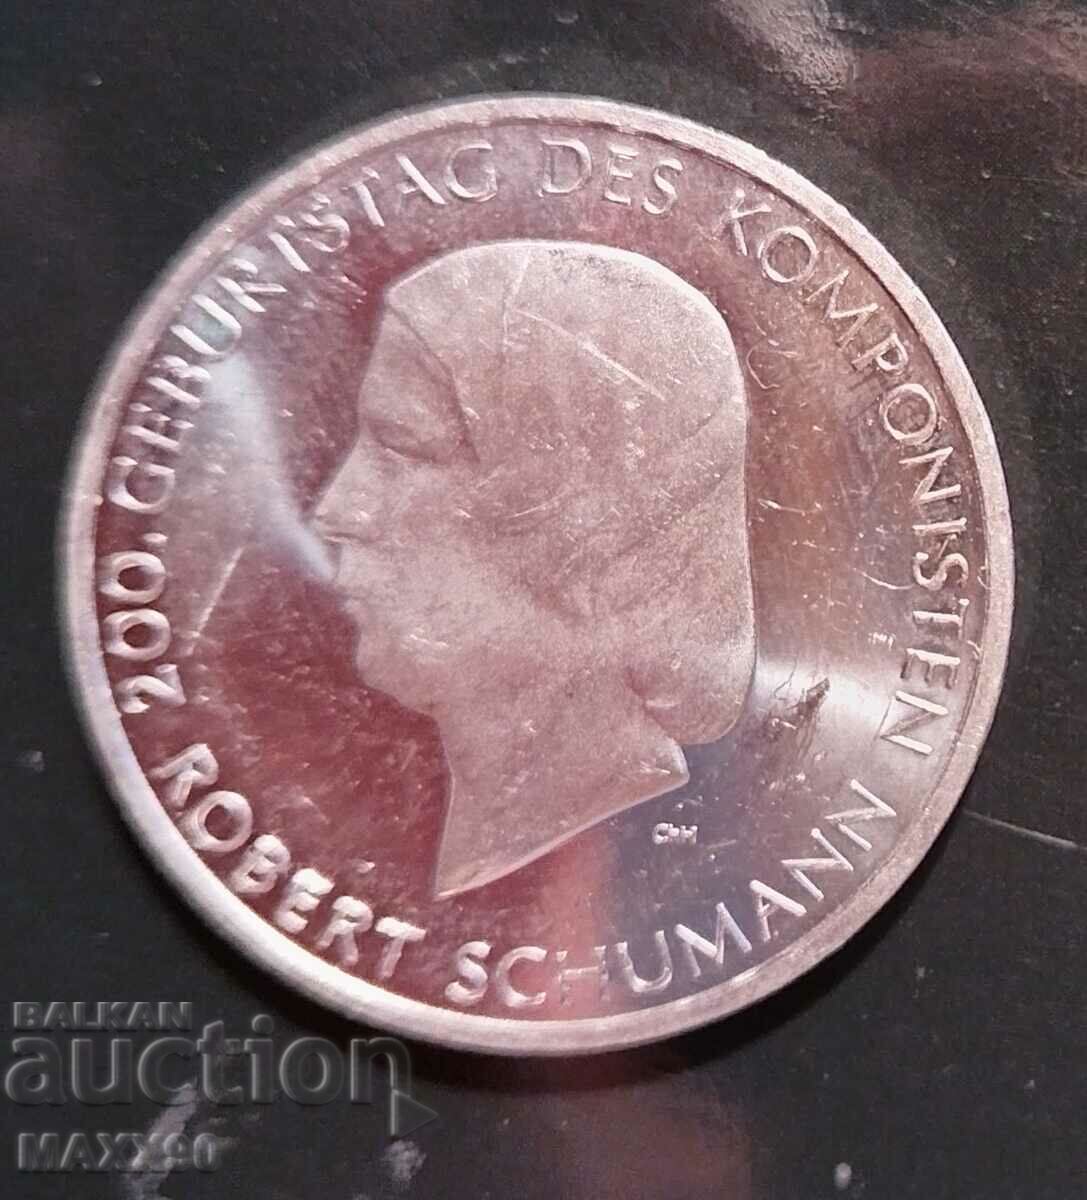 10 euro silver Germany Robert Schumann